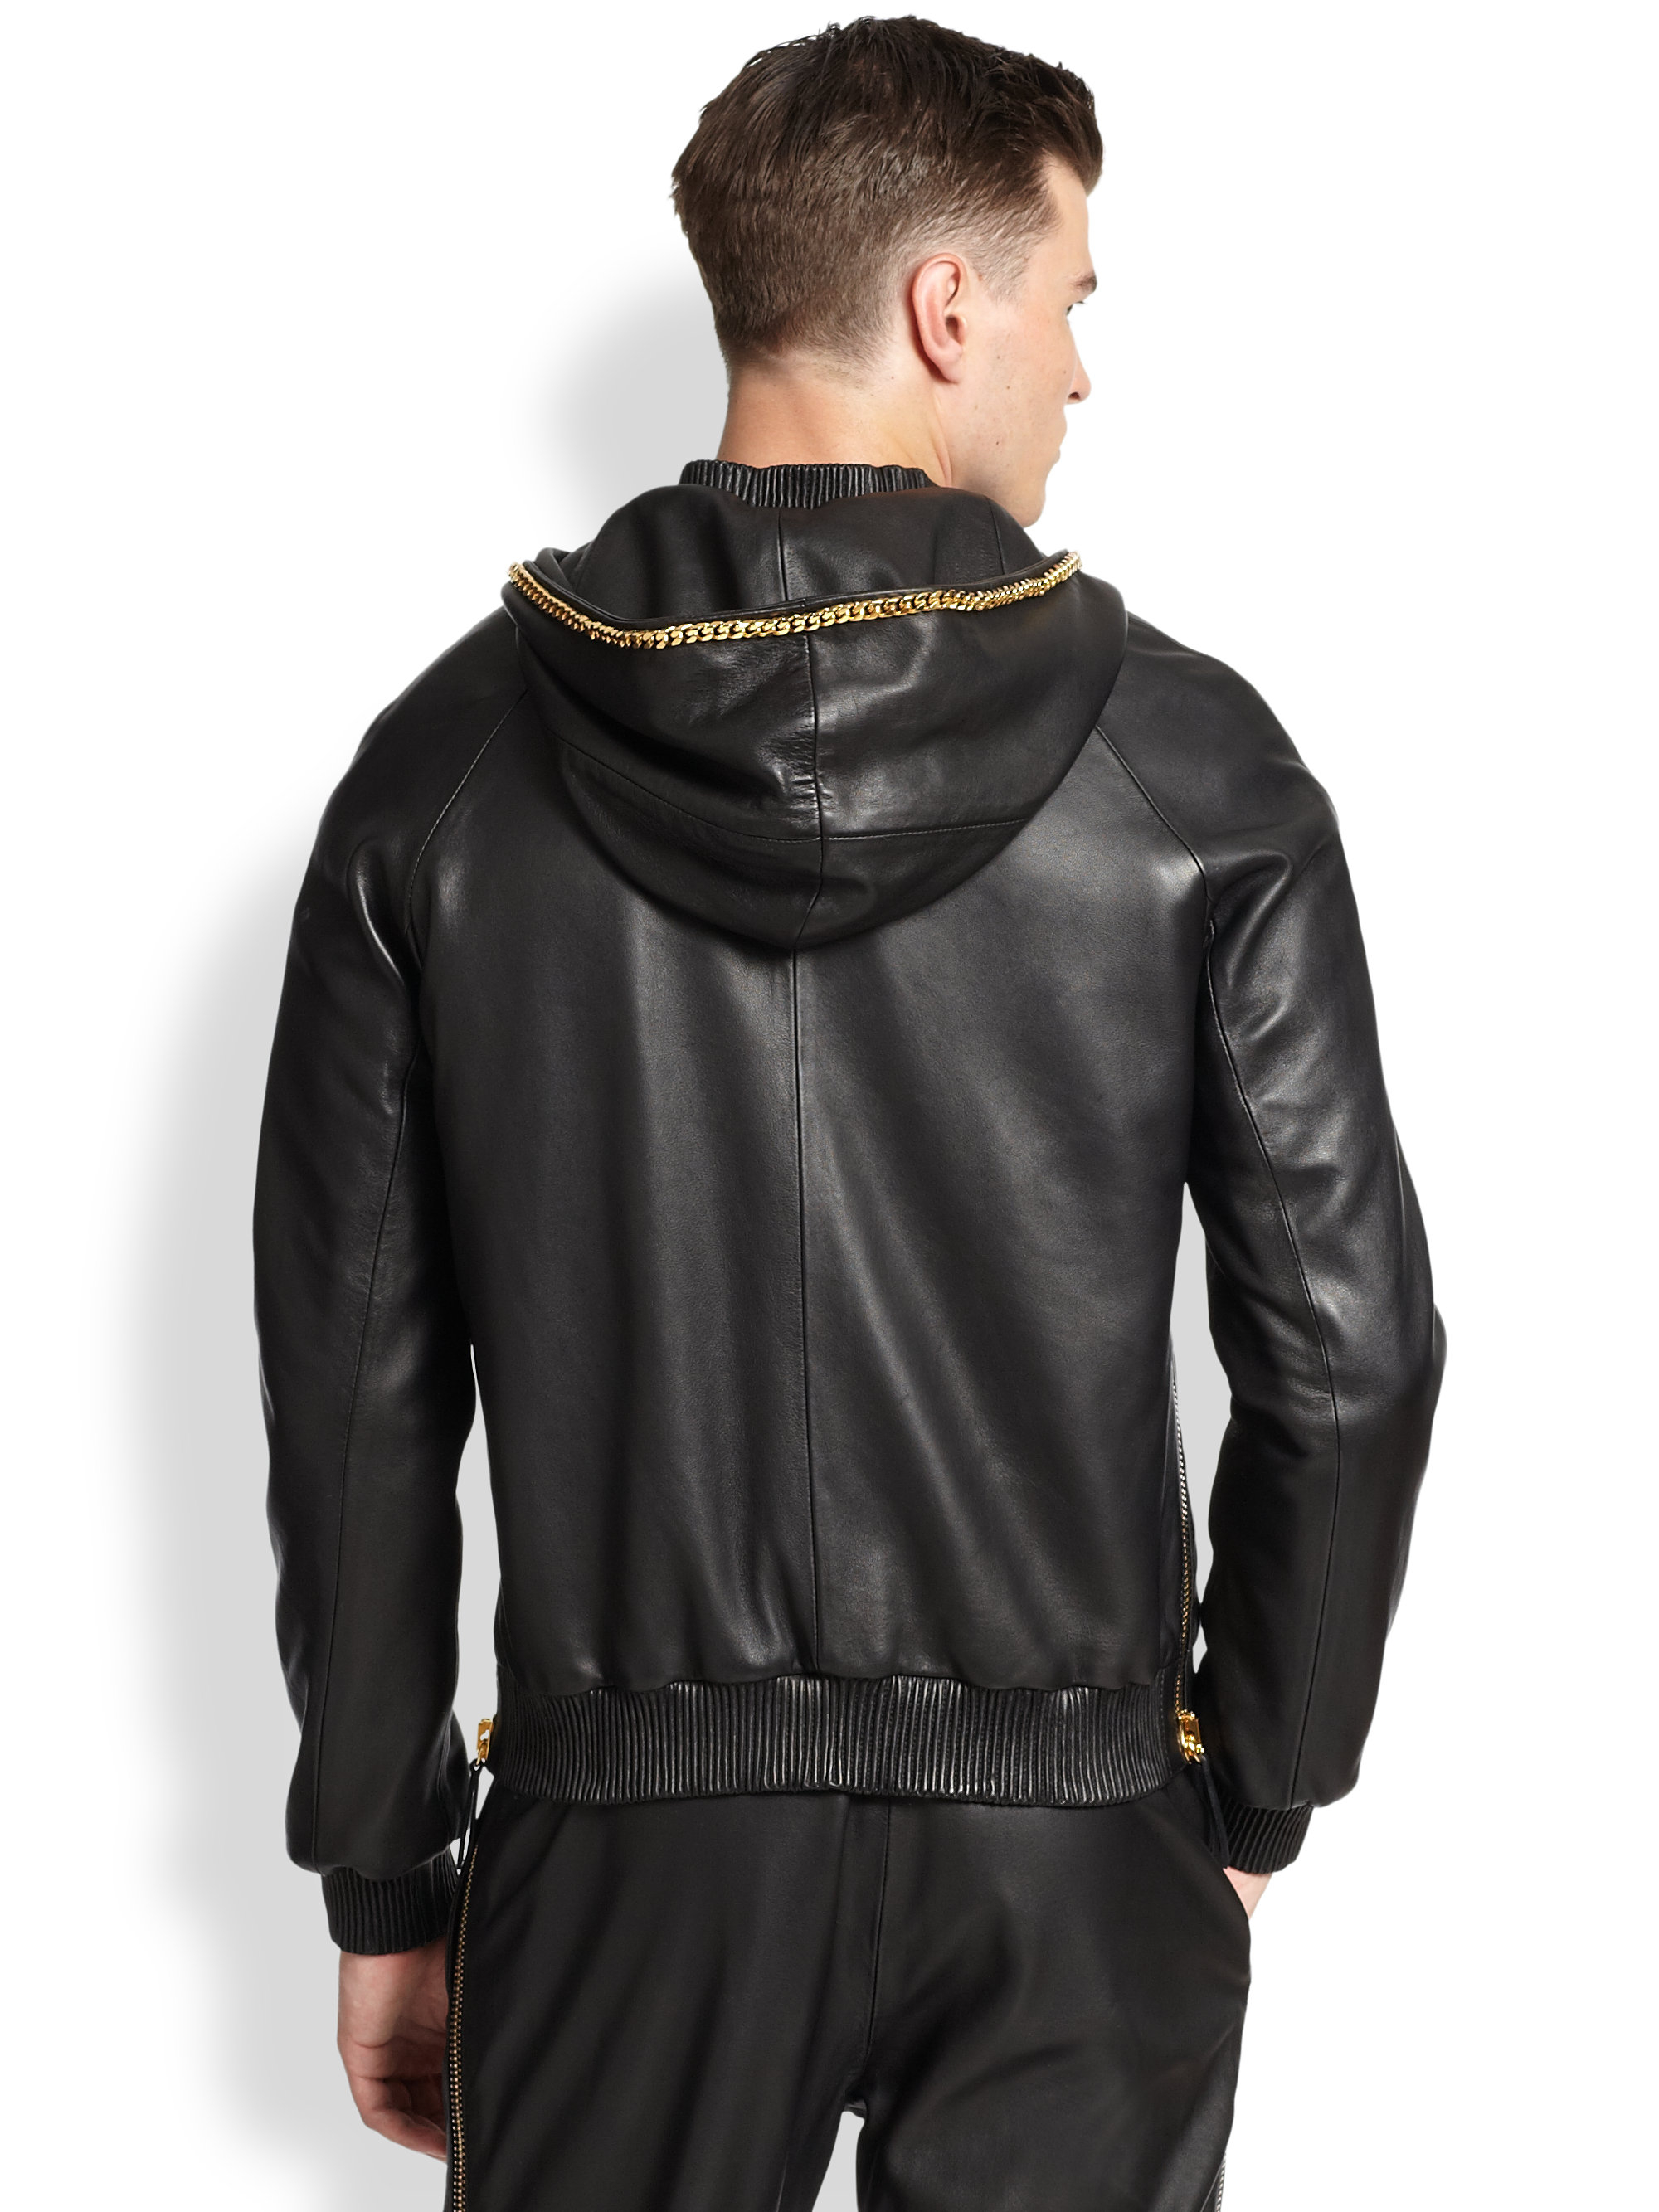 Black leather hoodie